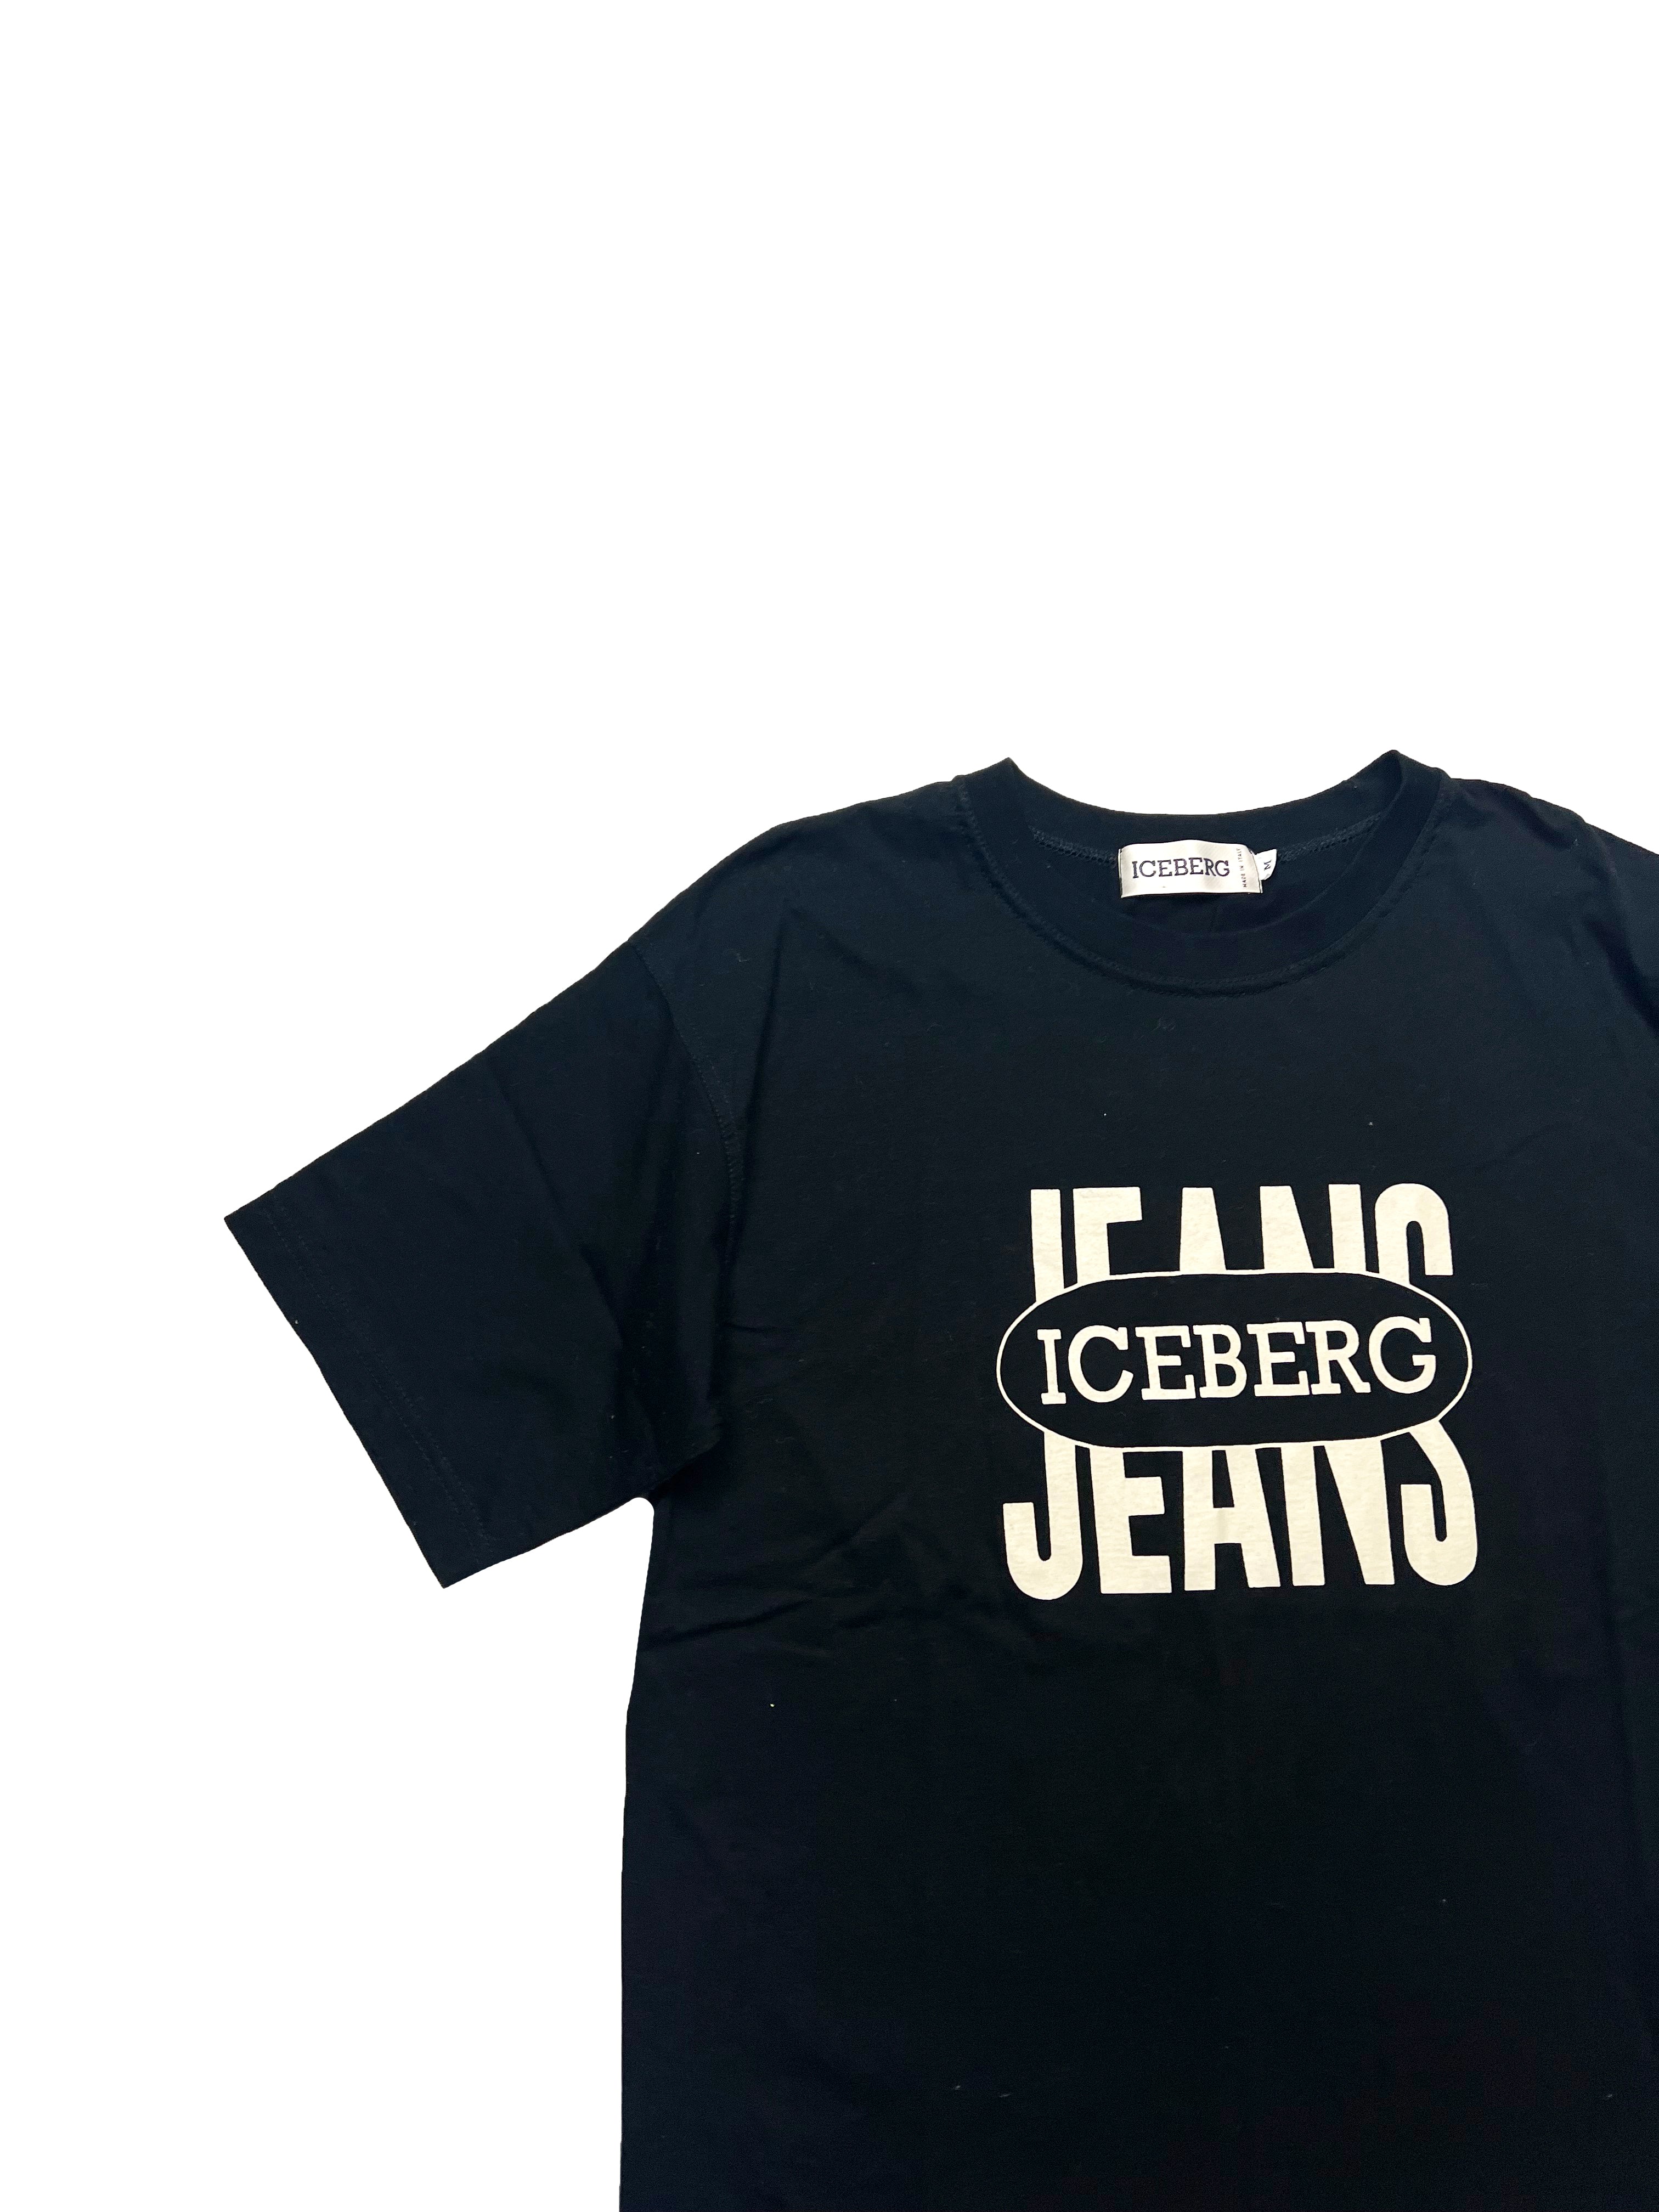 Iceberg Jeans Black T-shirt 90's